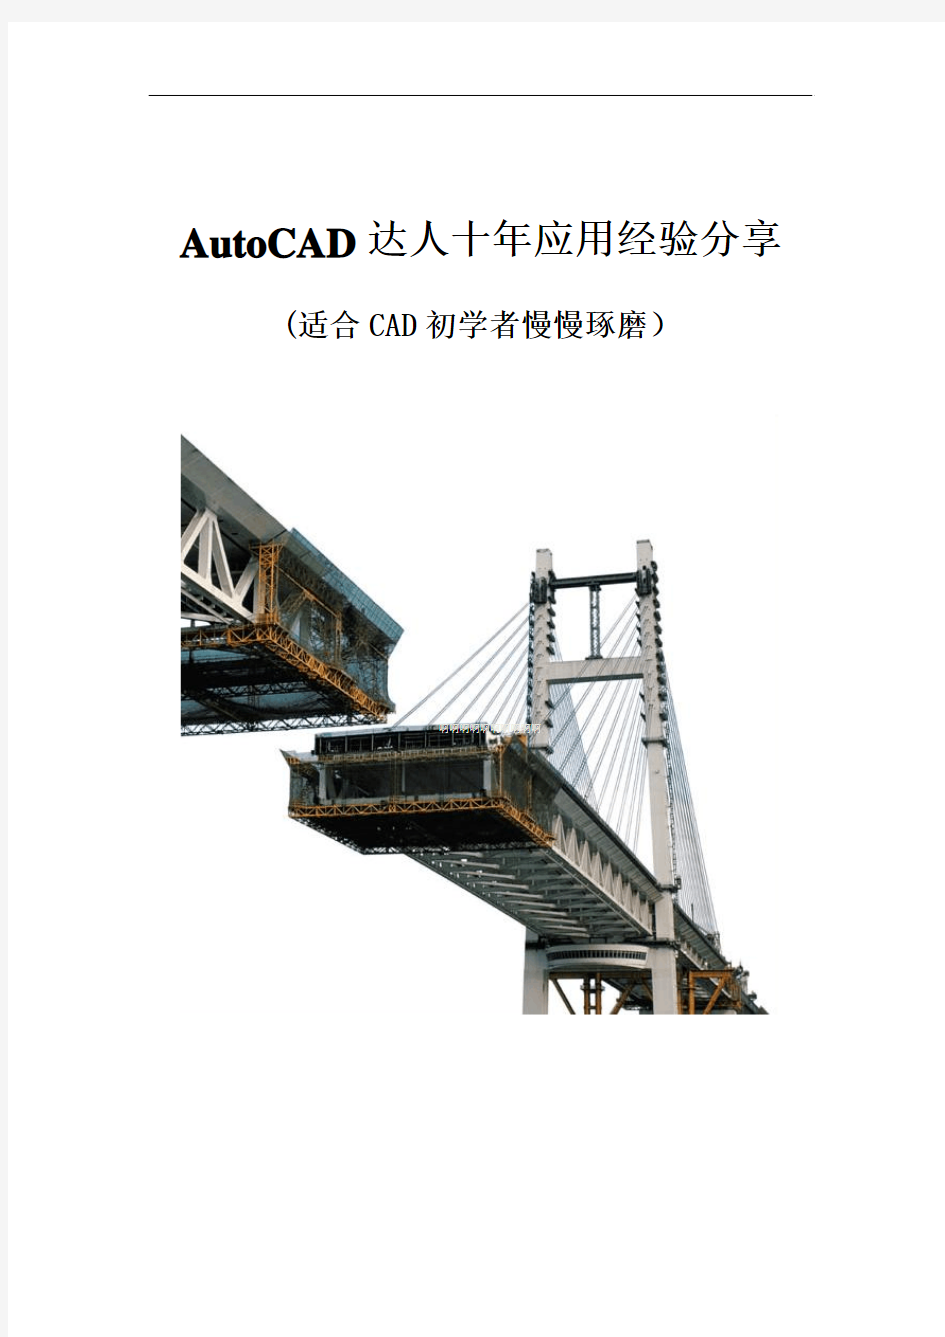 AutoCAD达人十年应用经验分享(适合CAD初学者慢慢琢磨)